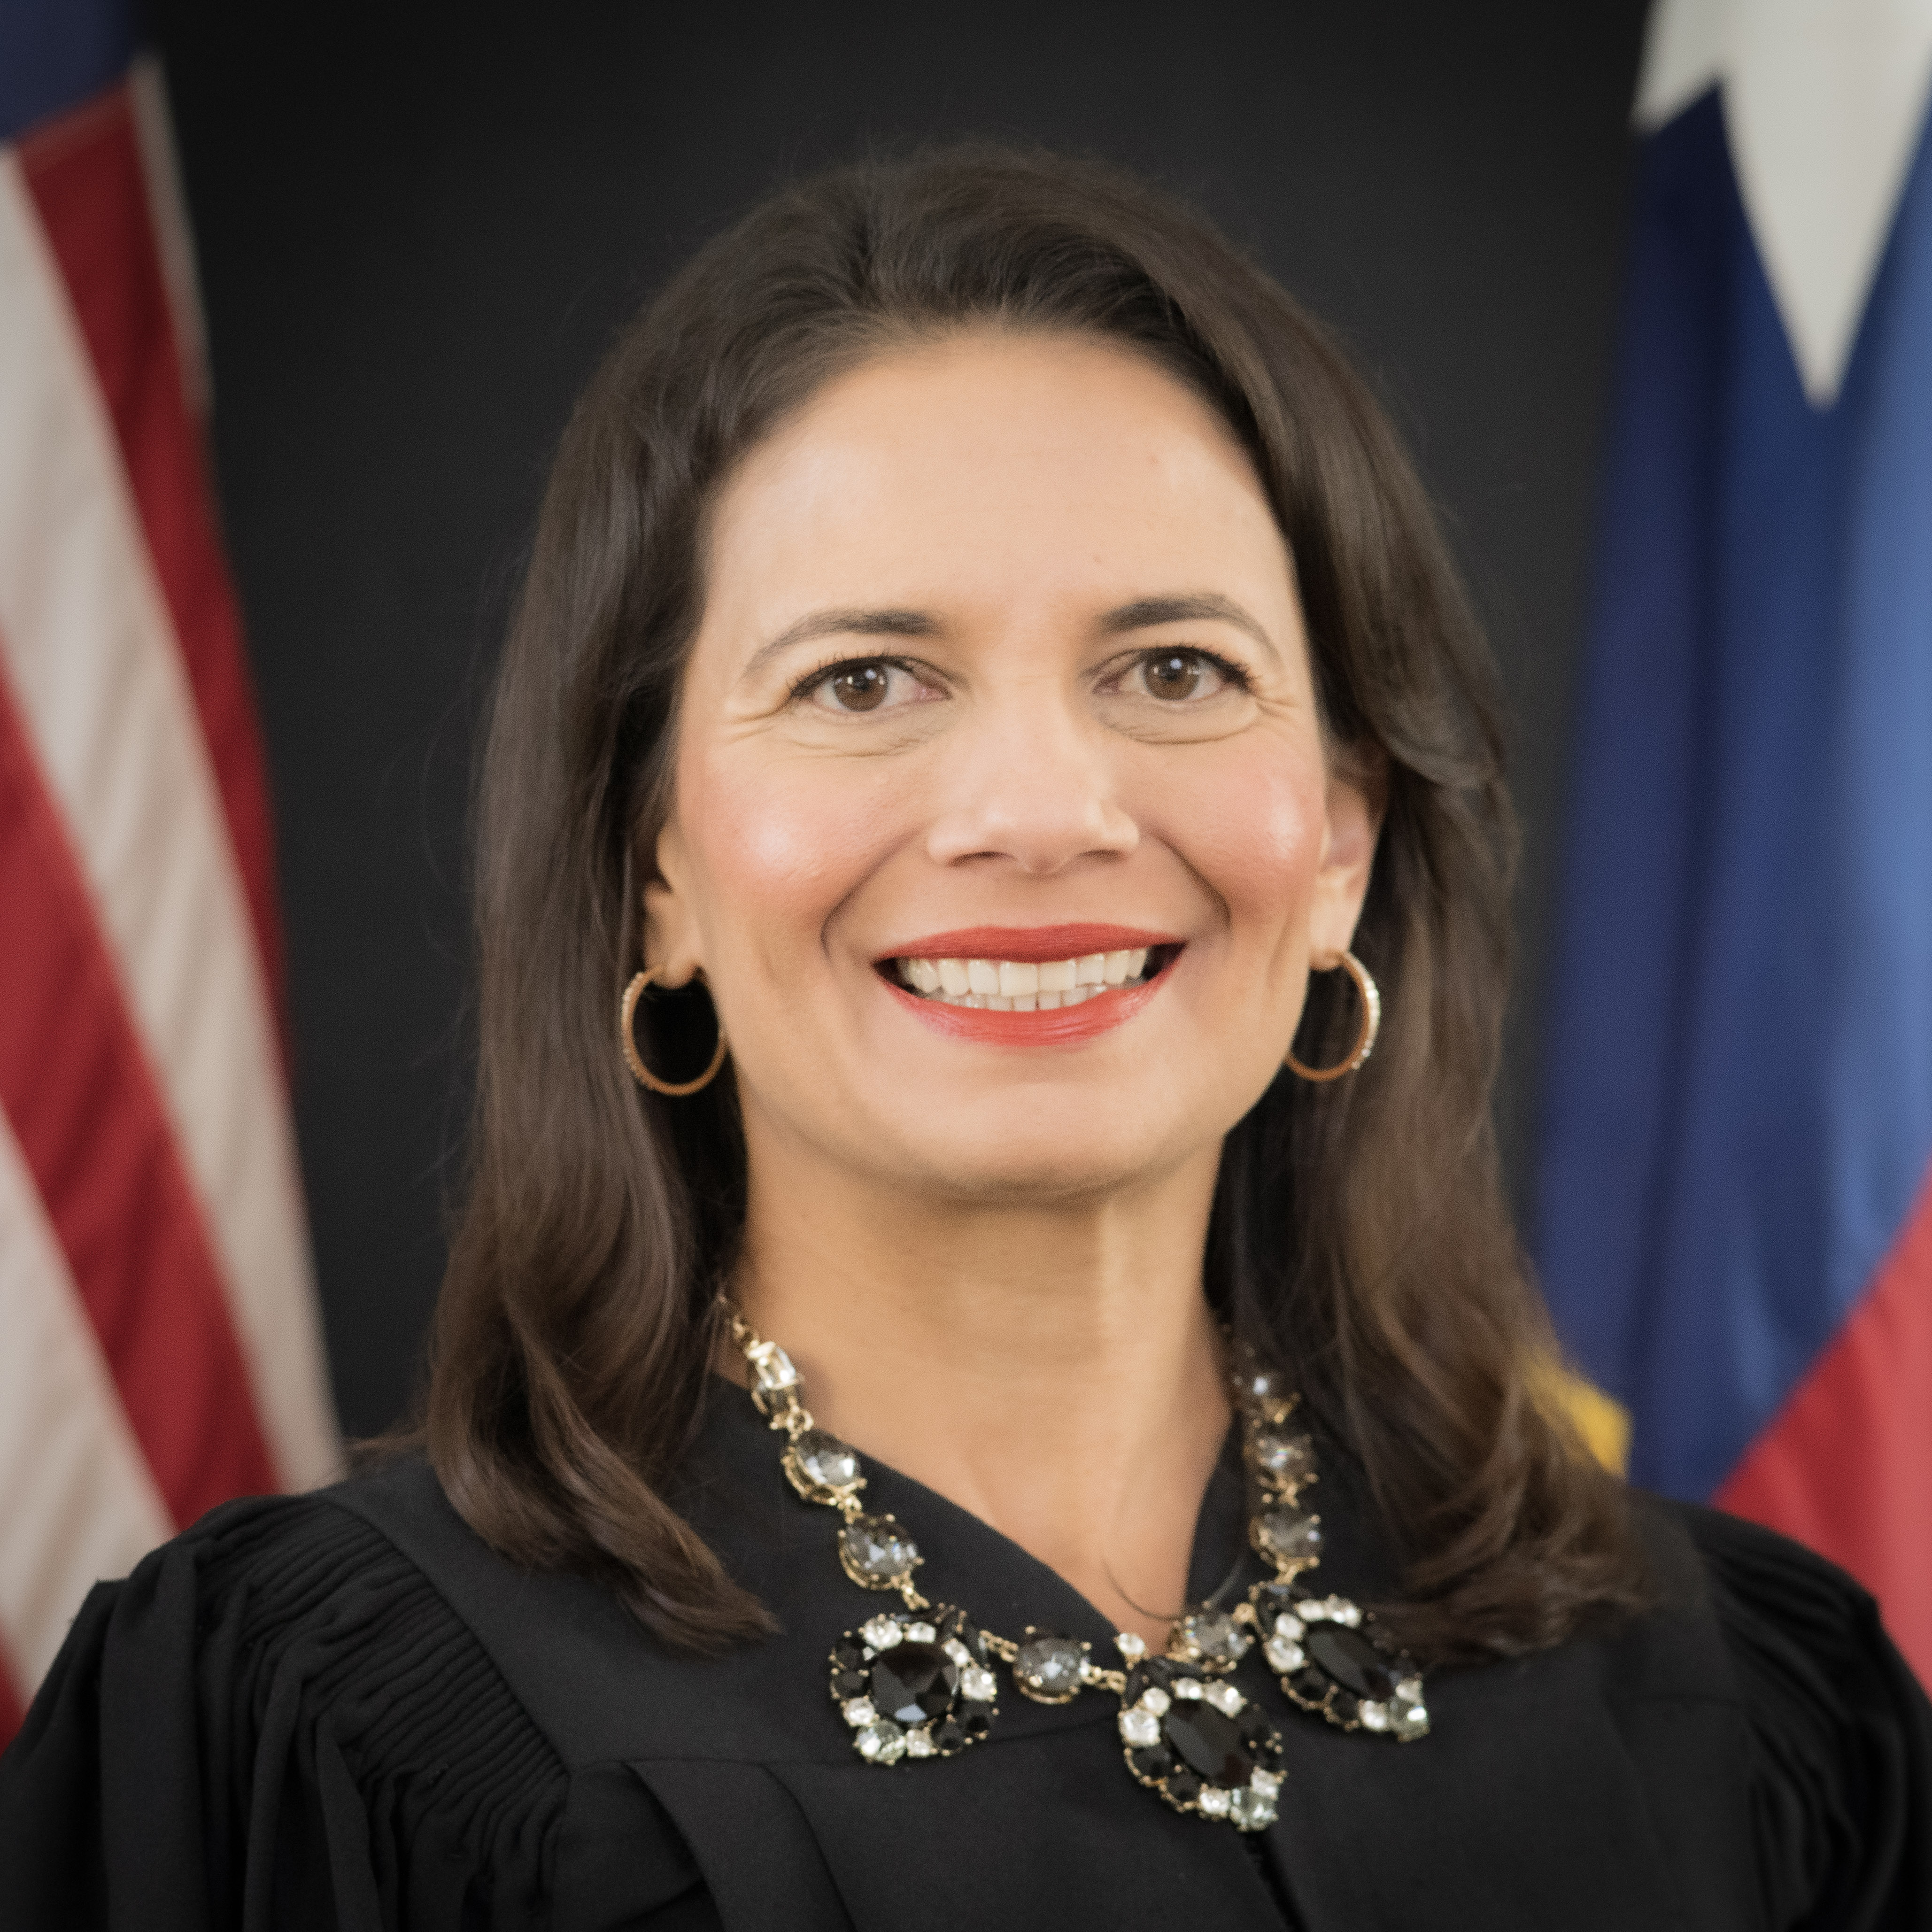 Photo of Justice Amparo Monique Guerra